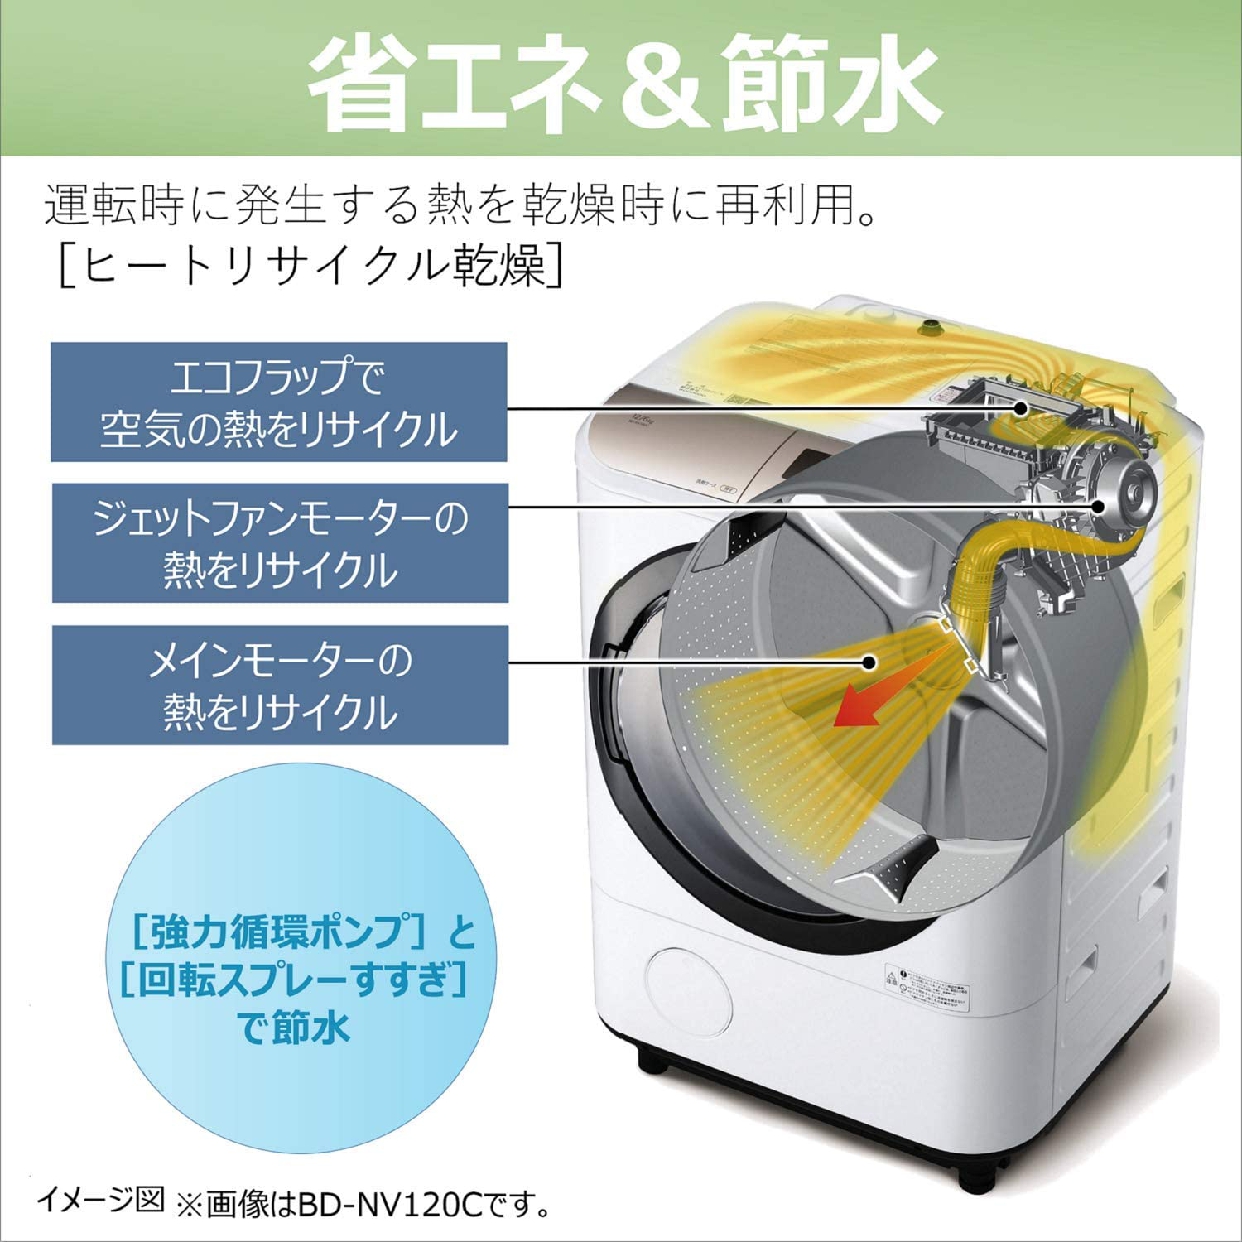 日立(HITACHI) ビッグドラム 洗濯乾燥機 BD-SG100Cの商品画像6 